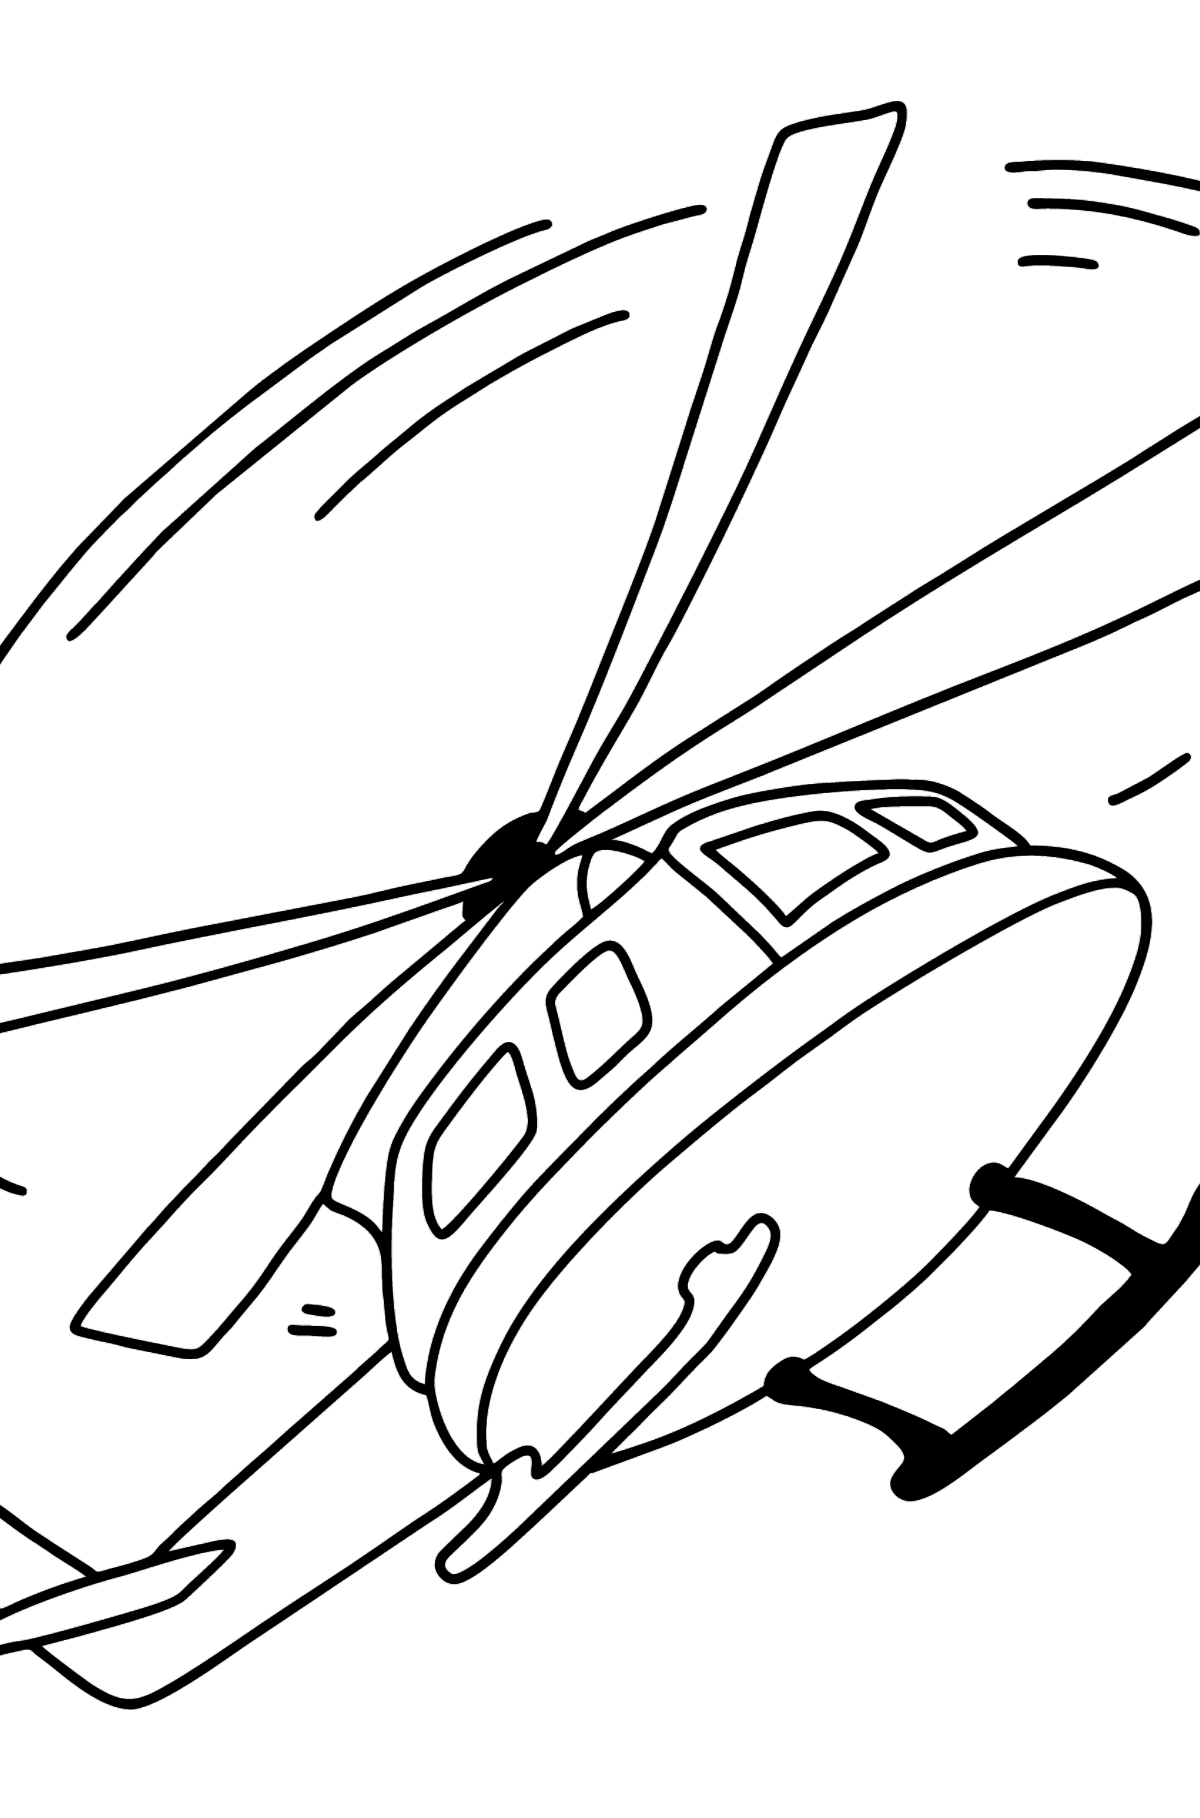 Dibujo de helicóptero para colorear online - Dibujos para Colorear para Niños